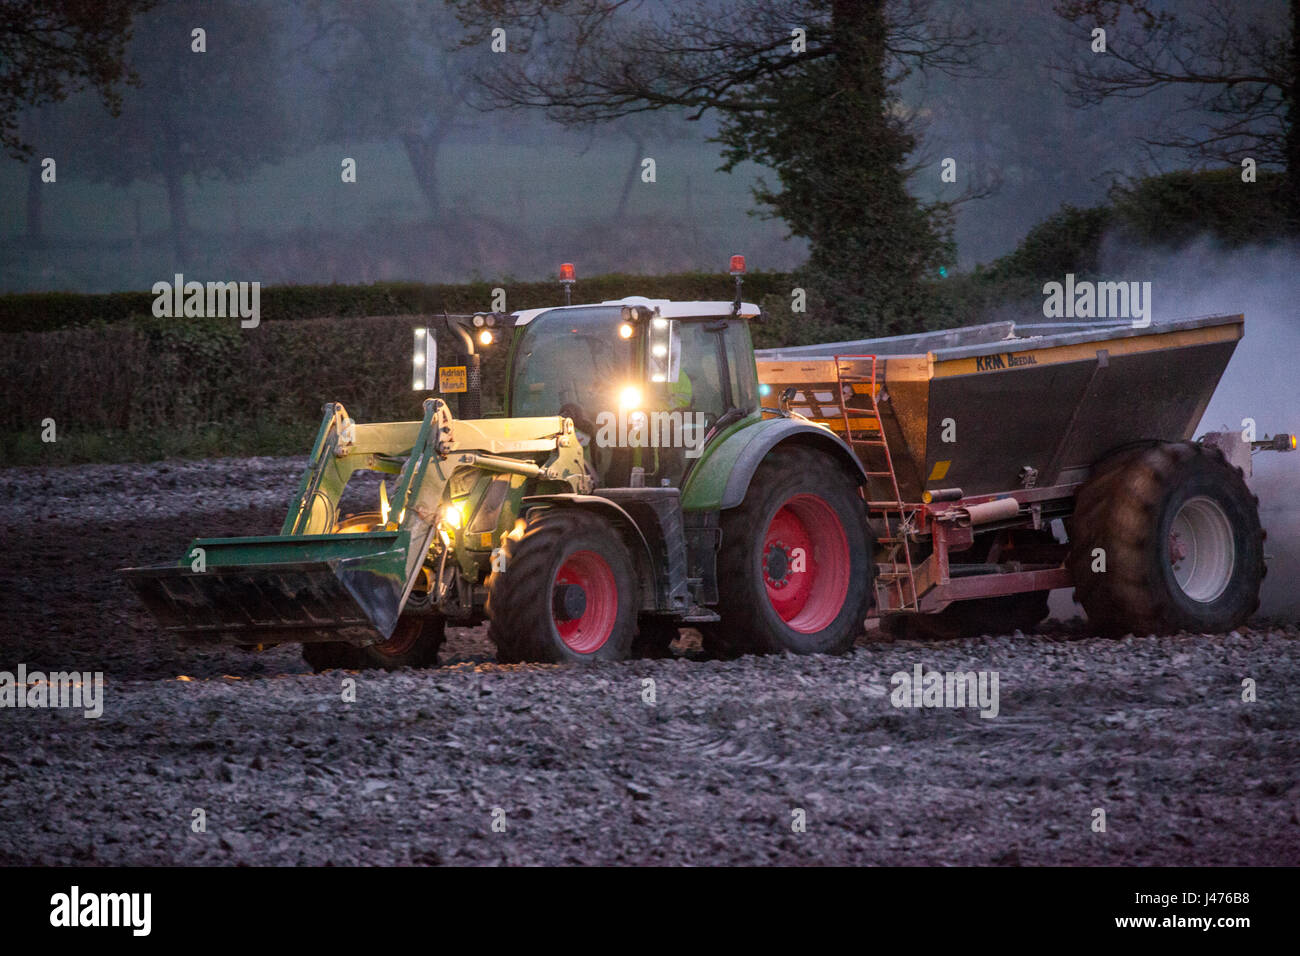 Agriculteur travailler jusque tard dans la nuit, l'épandage de chaux par ses feux du tracteur Banque D'Images